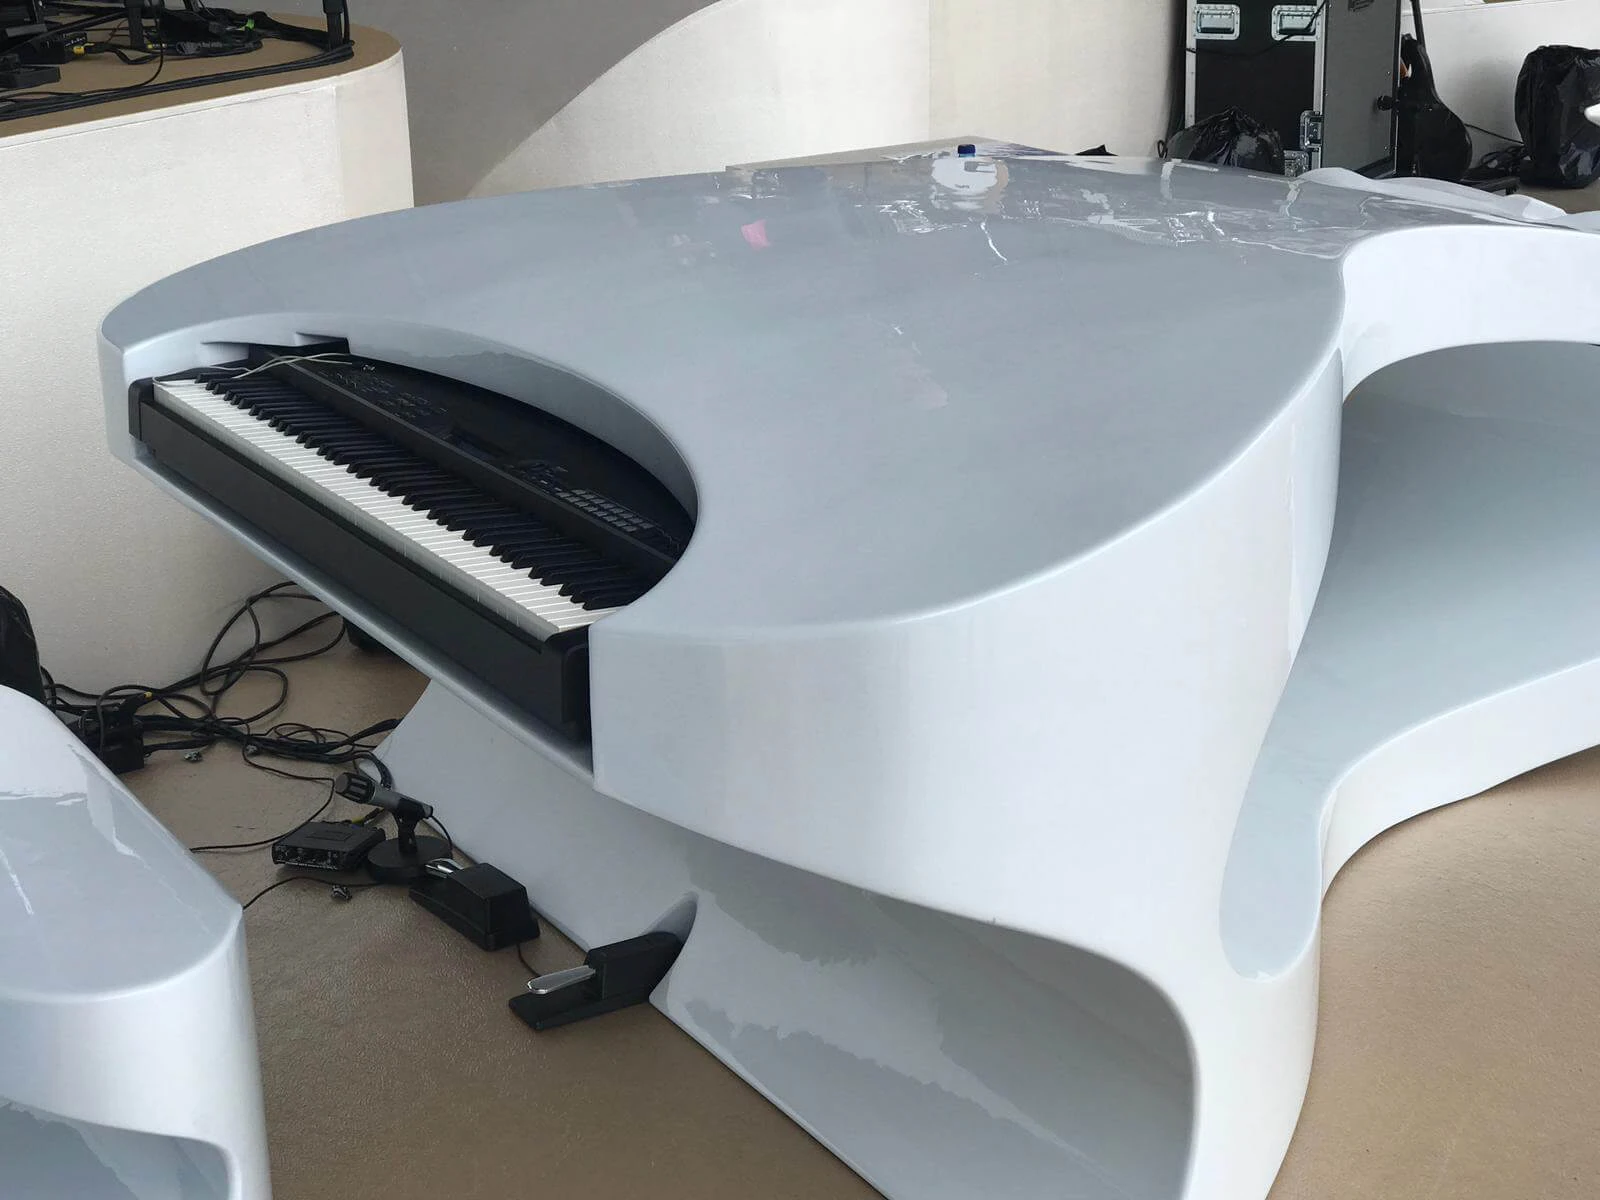 De piano voor de concerten van Marco Borsato vormt een strak geheel met het piepschuim artwork dat is afgewerkt met polyureacoating.